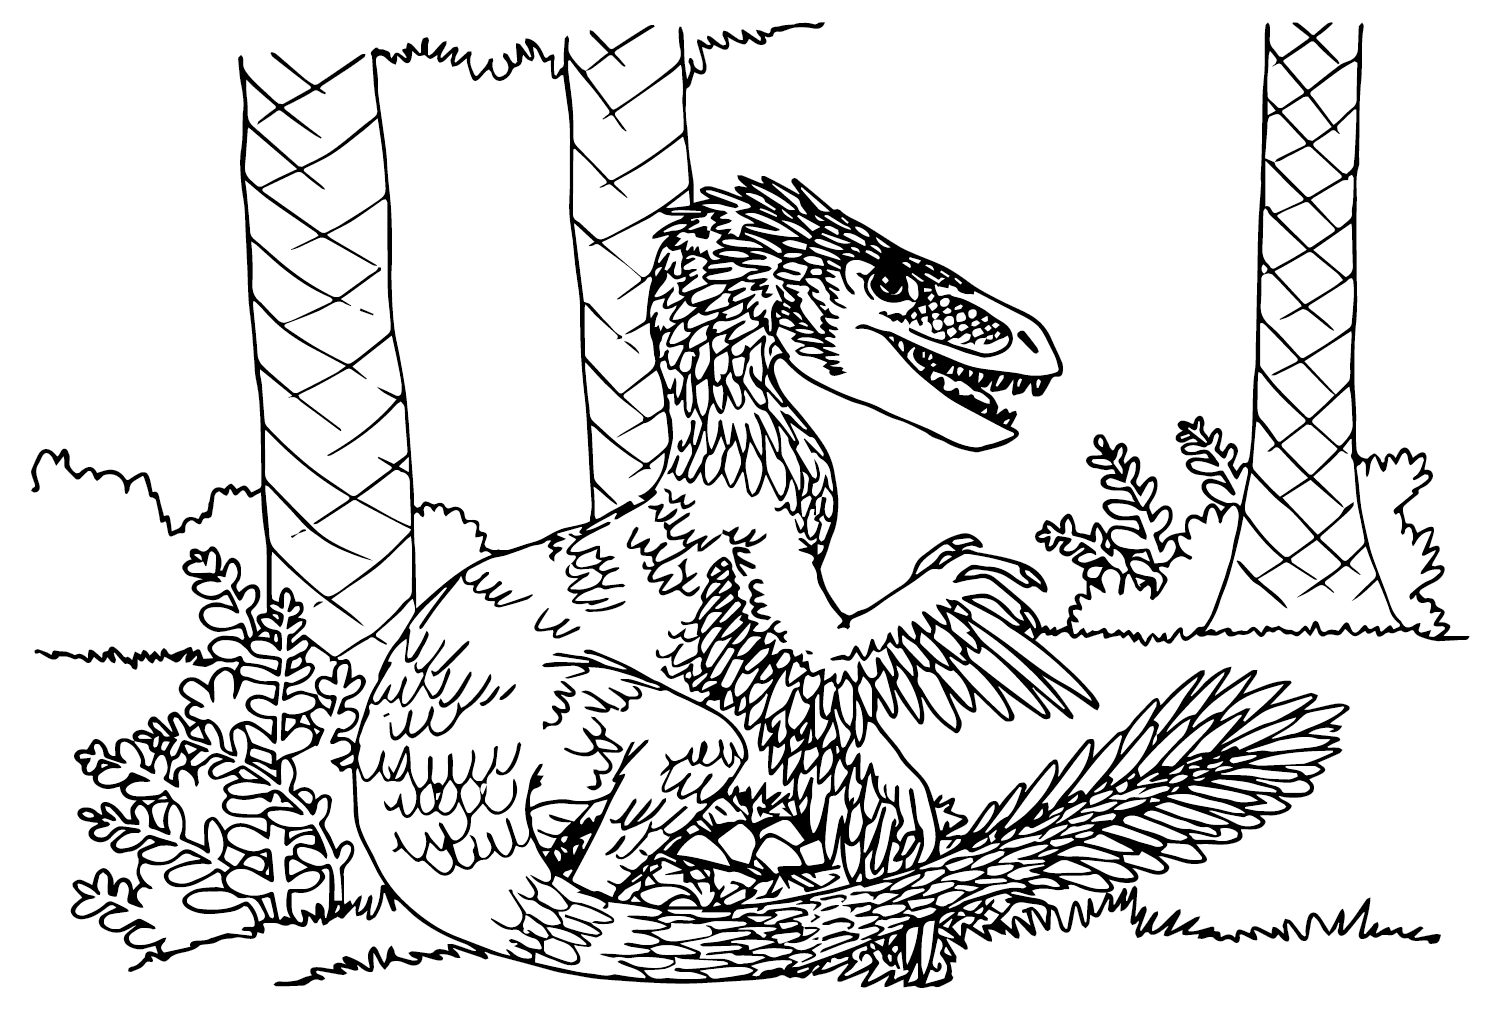 Utahraptor kleurplaat van Utahraptor